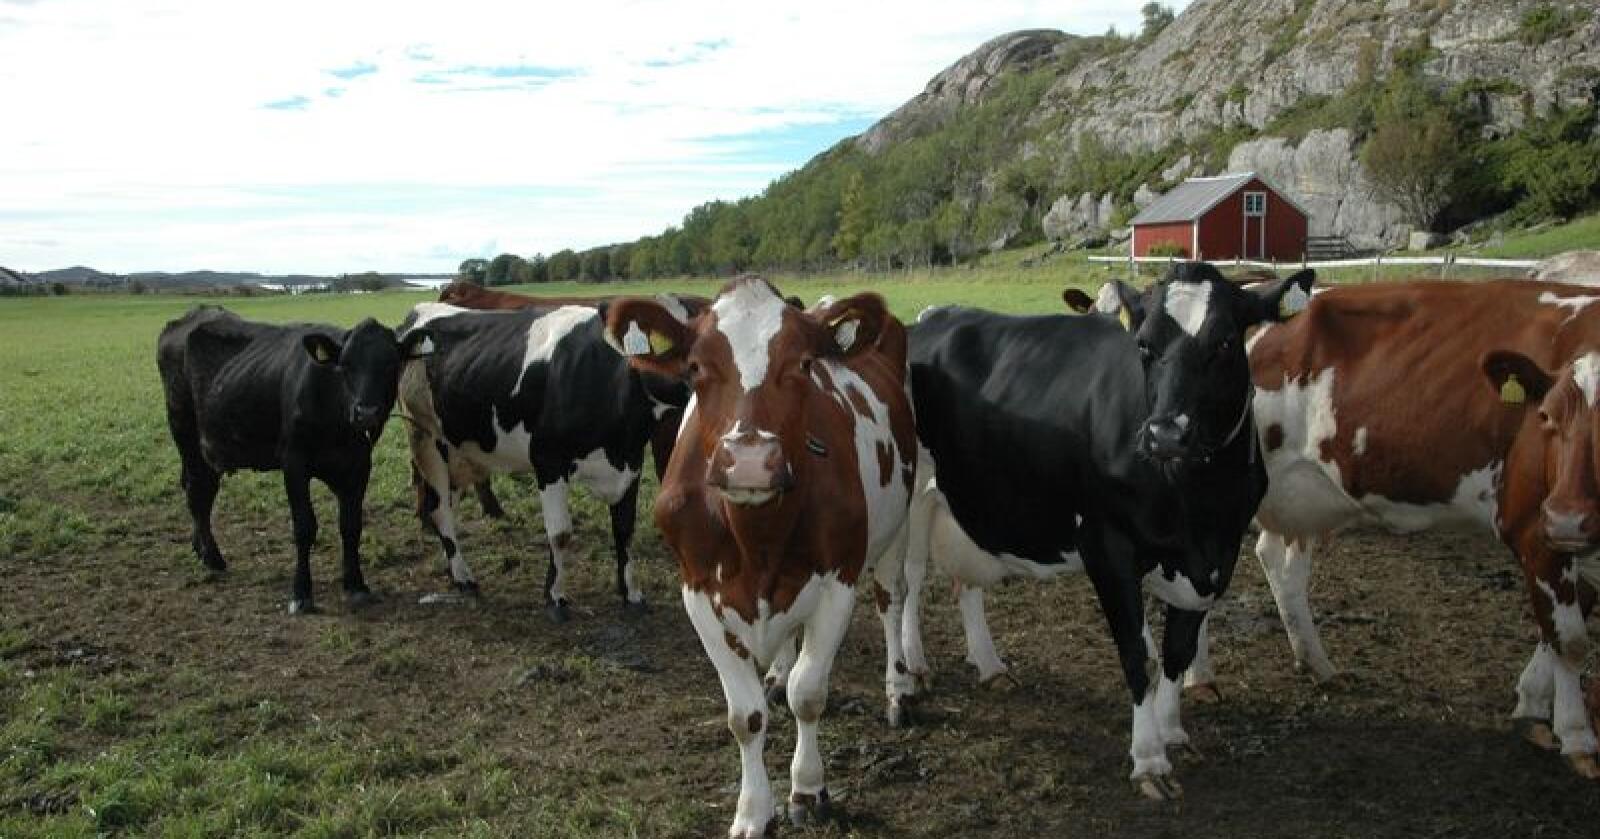 Det vil bli dyrt å tilpasse melkeproduksjonen til Jarlsberg-utfasinga. En tilsvarende stor nedgang i melkeproduksjonen vil med framskriving av forbruket komme hvert femte år, forteller Tines nestleder. (Arkivfoto)